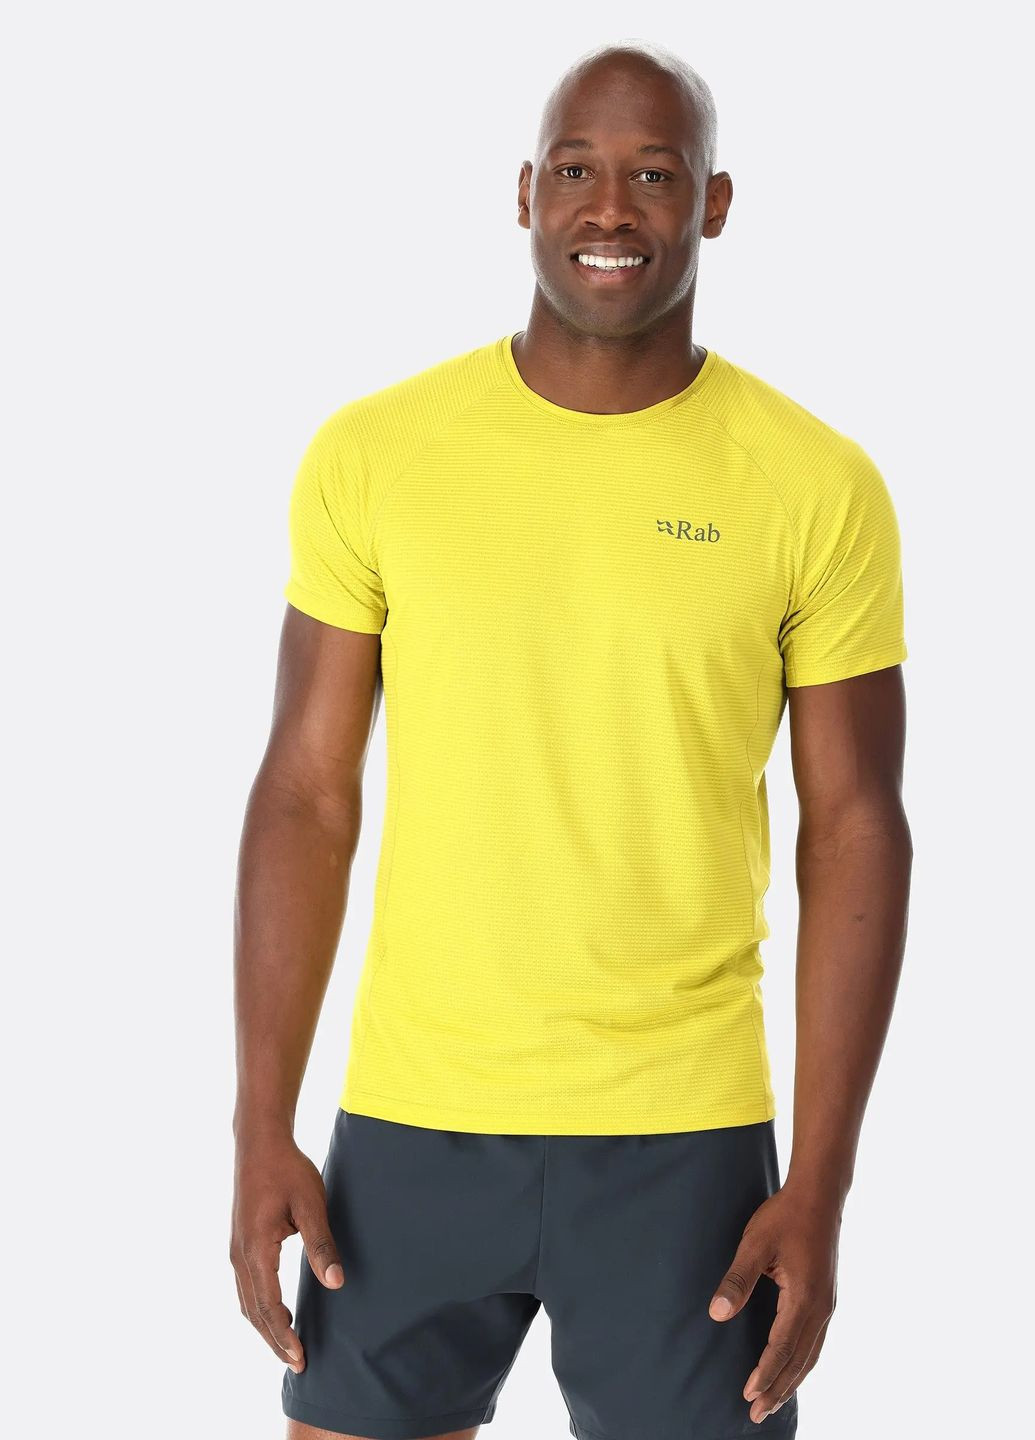 Жовта футболка onic tee s Rab